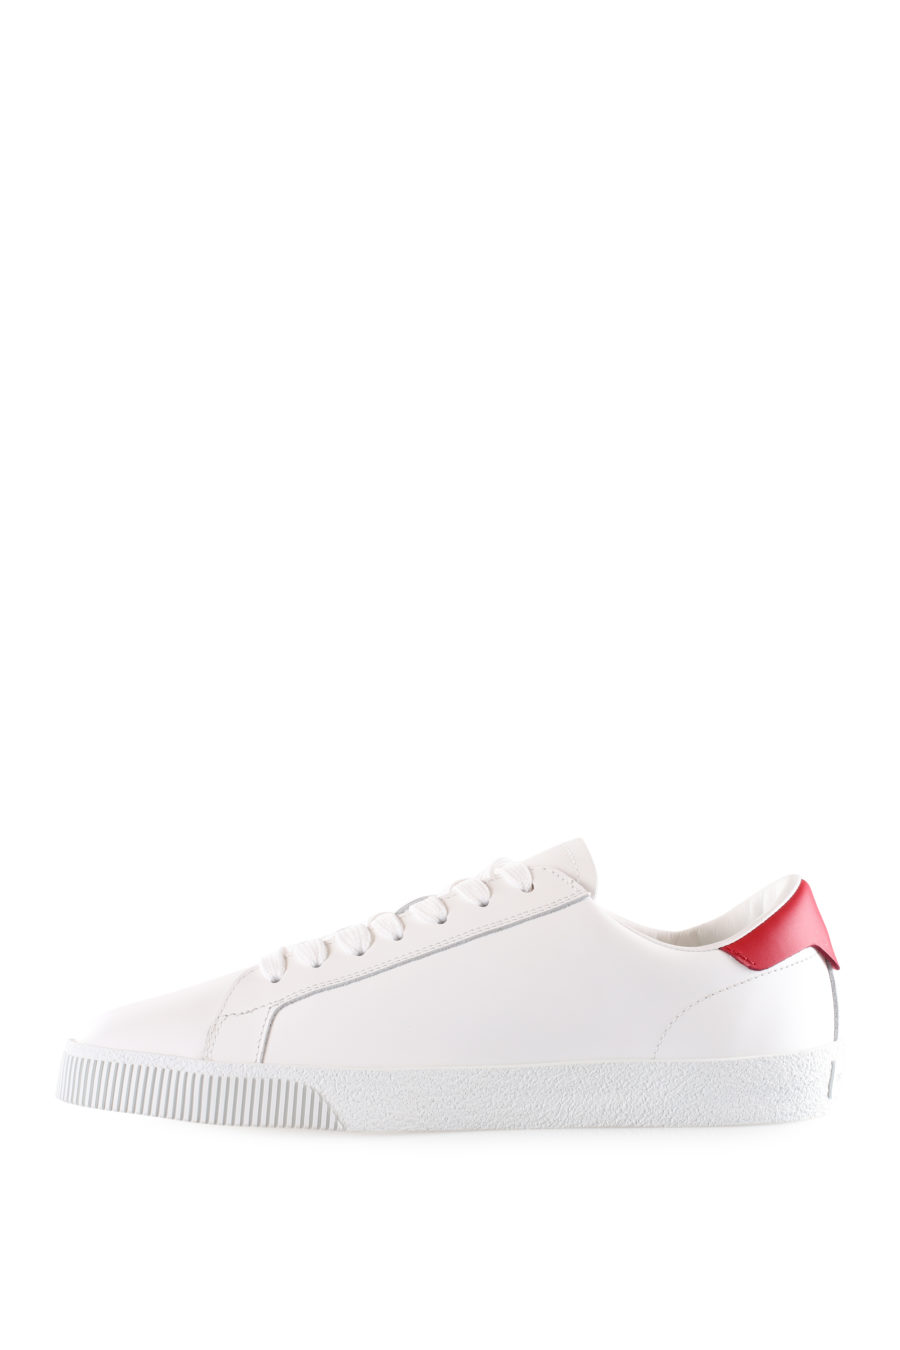 Zapatillas blancas con logo "icon" diagonal y detalle rojo - IMG 9533